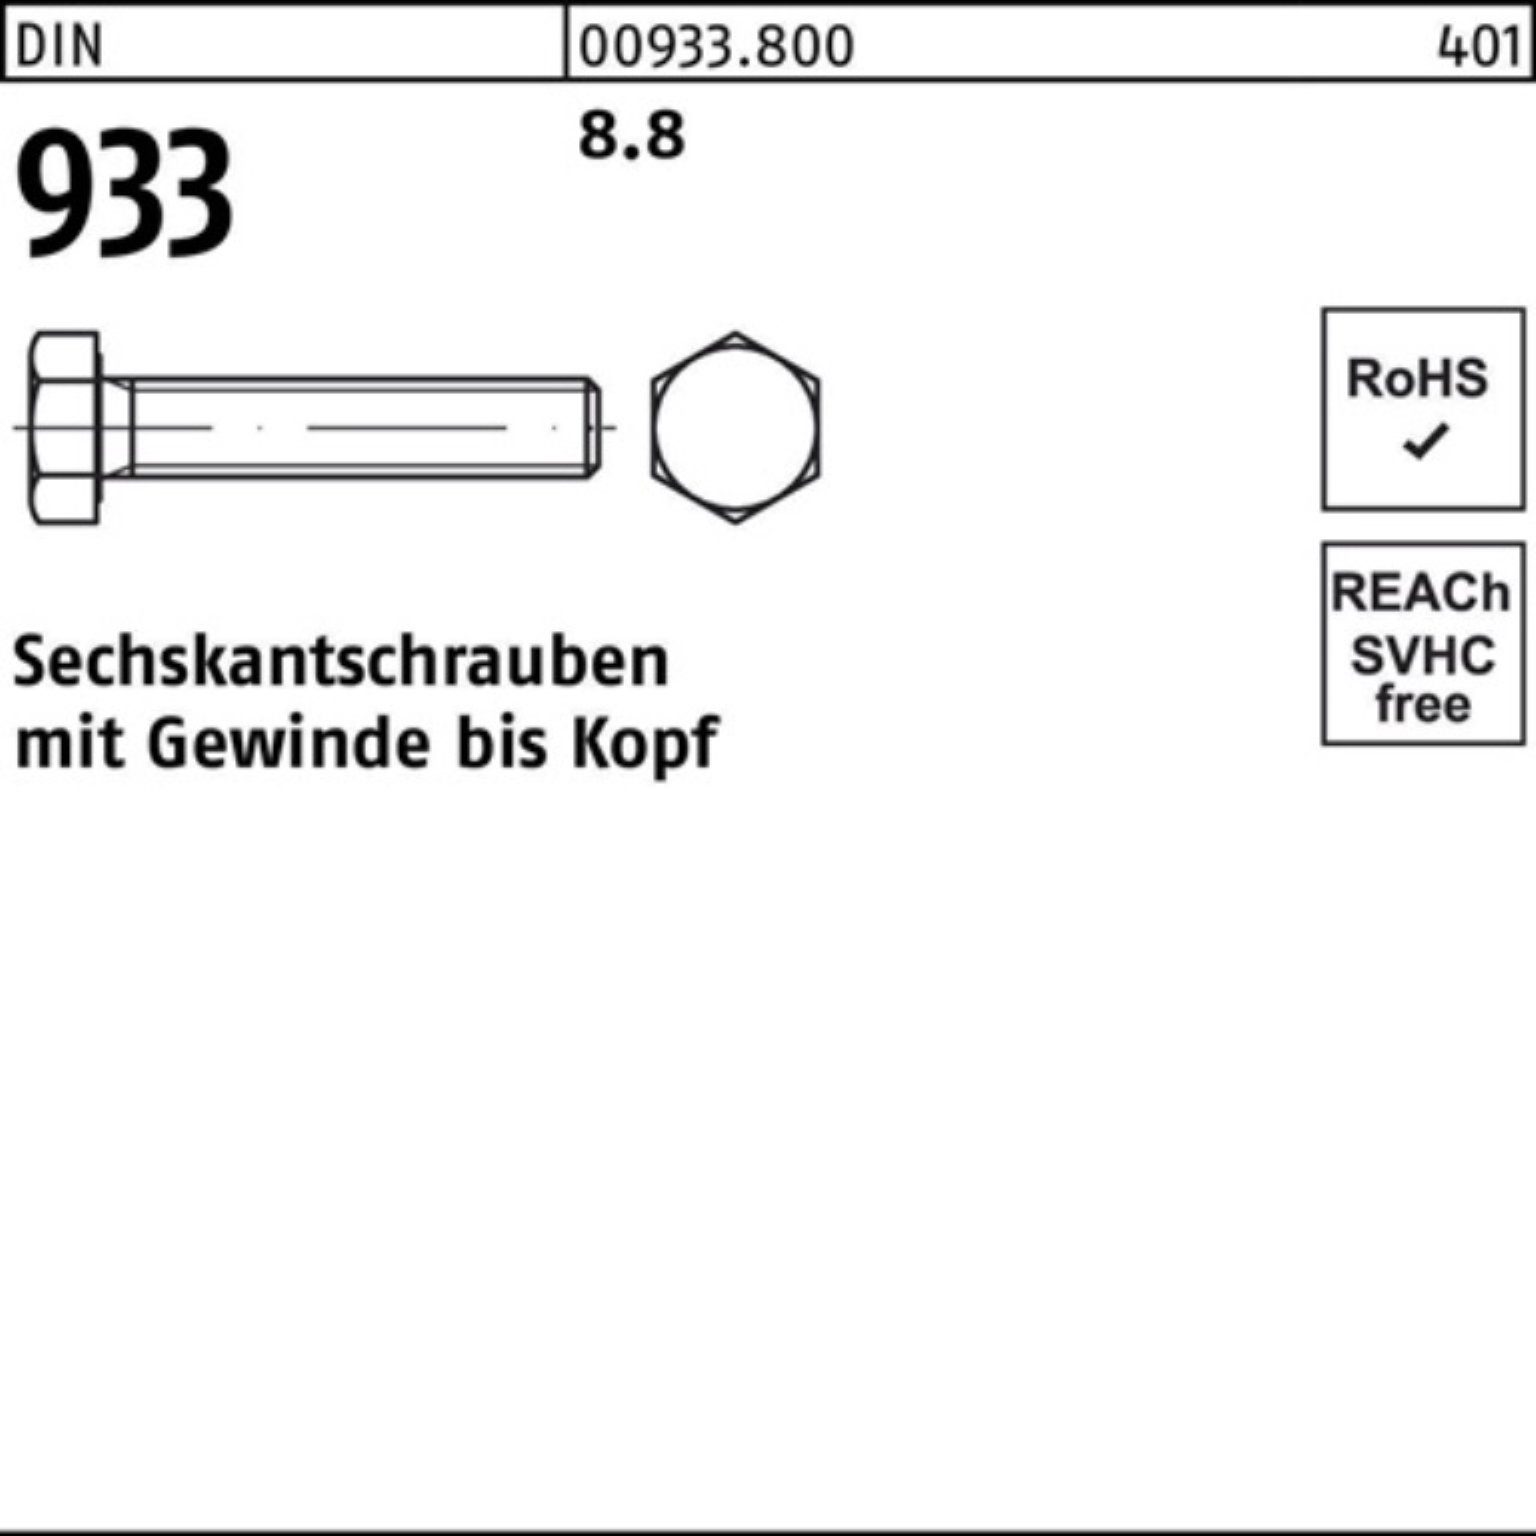 Reyher Sechskantschraube 100er 8.8 VG 933 DIN Pack Sechskantschraube 30 50 DIN Stück M18x 933